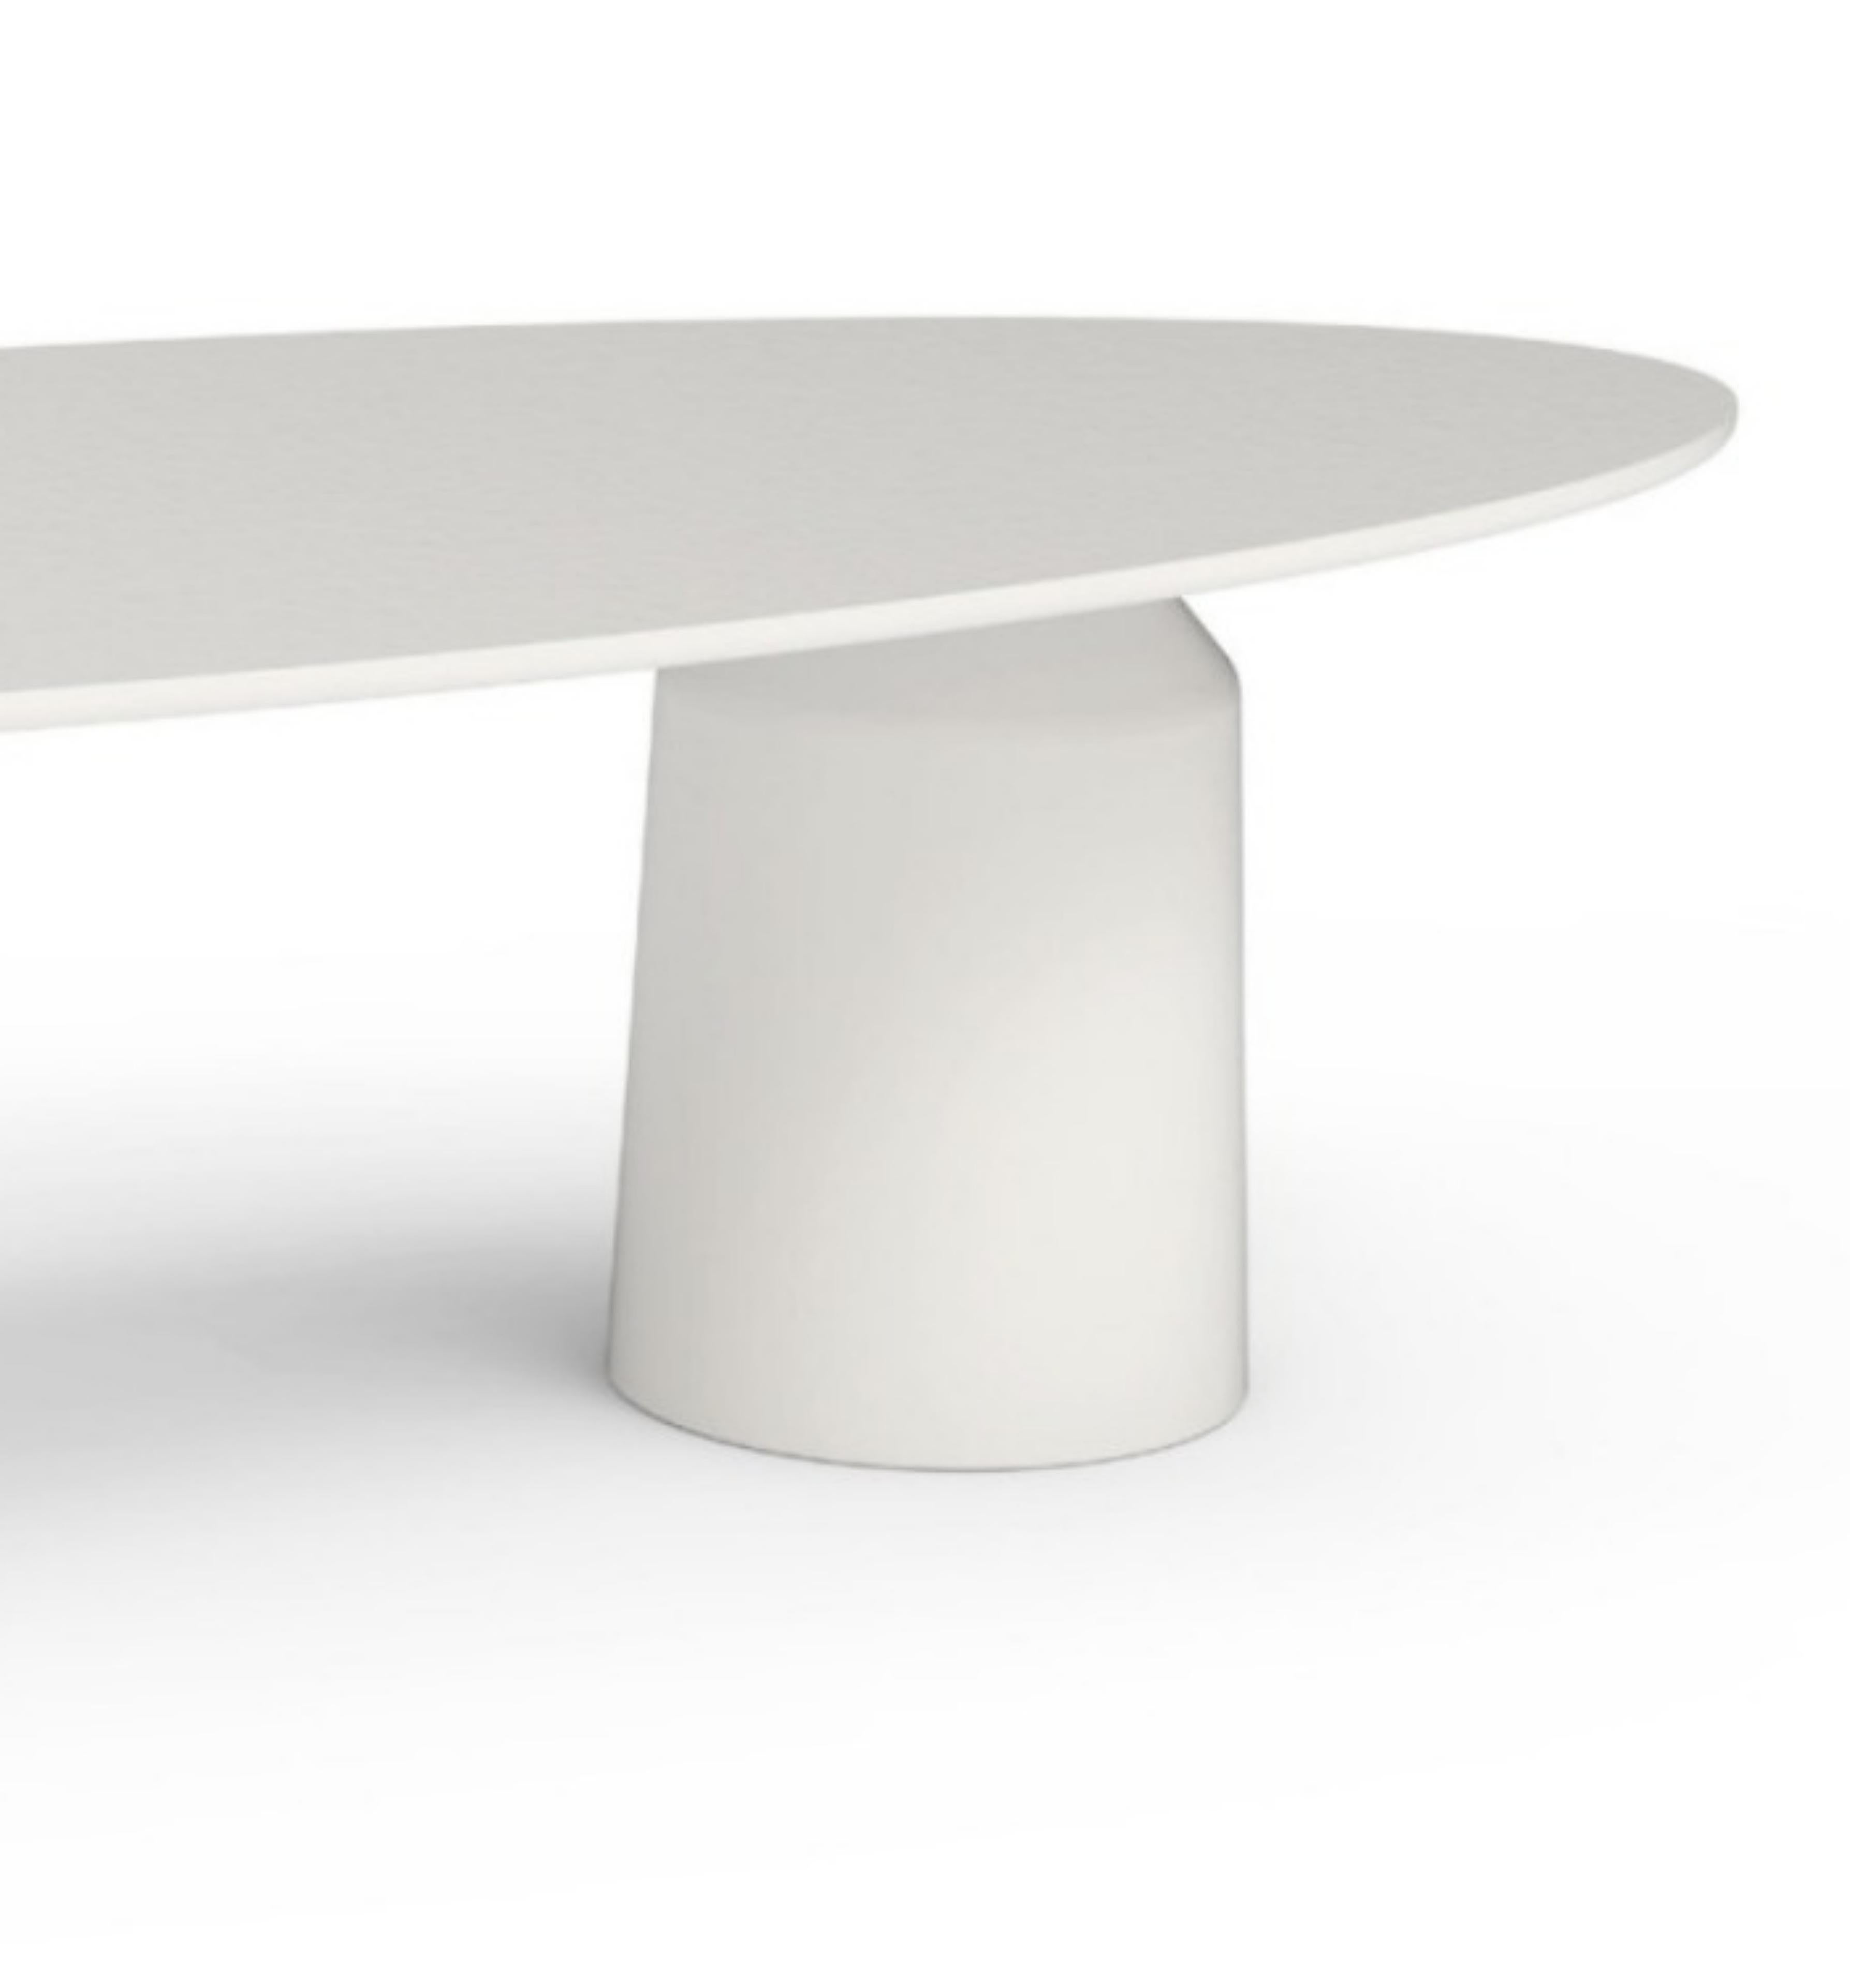 ÉTÉ 2024
Table à manger.
La table de salle à manger est conçue pour élever votre expérience de repas en plein air. Avec son design épuré et minimaliste, doté d'un plateau et d'une base ronds, il respire l'élégance et le style. Fabriqué avec des